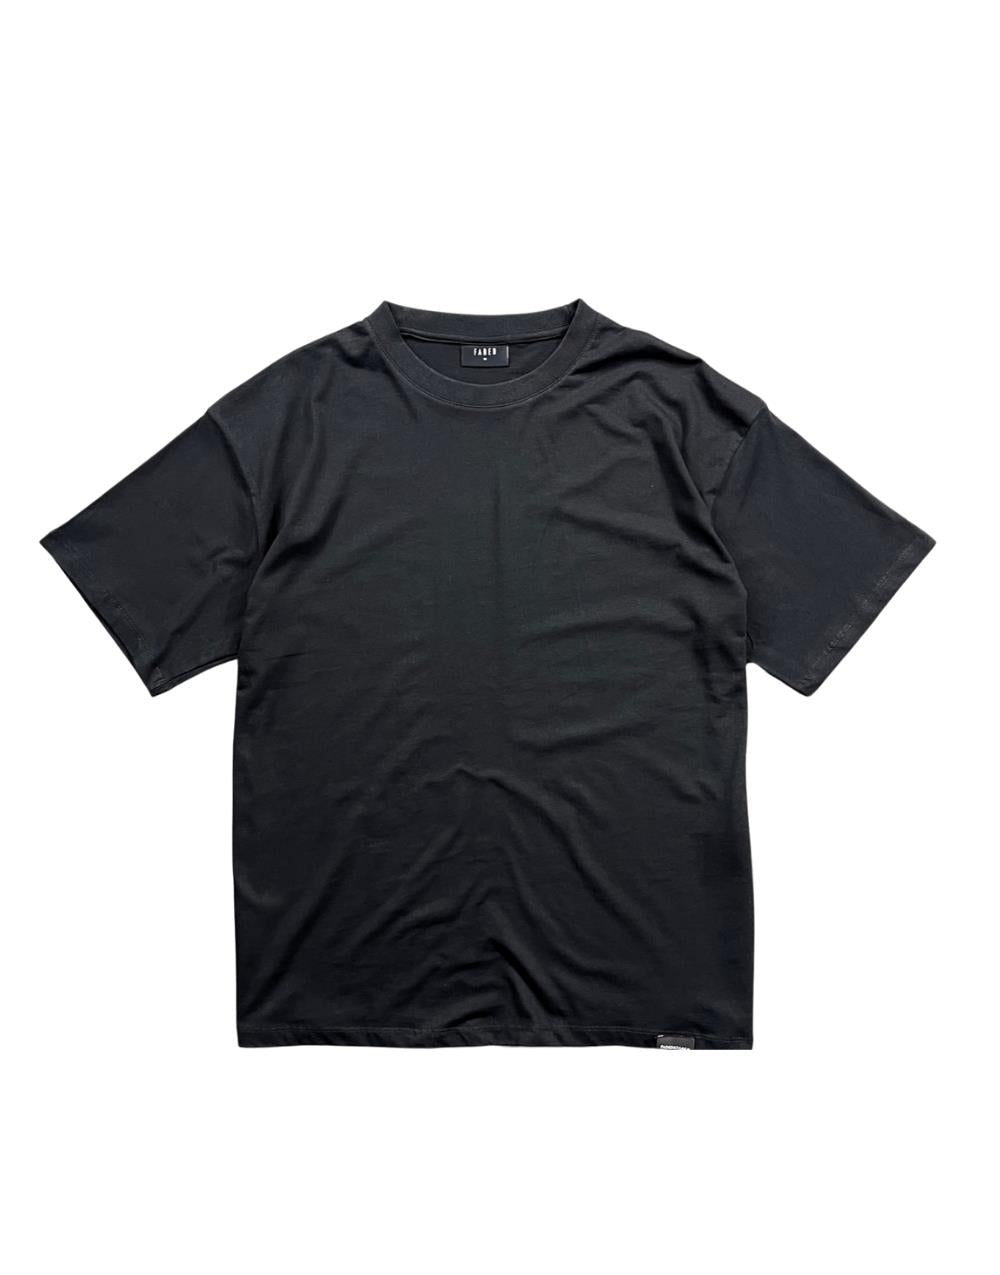 Black Oversize Basic Men's T-Shirt